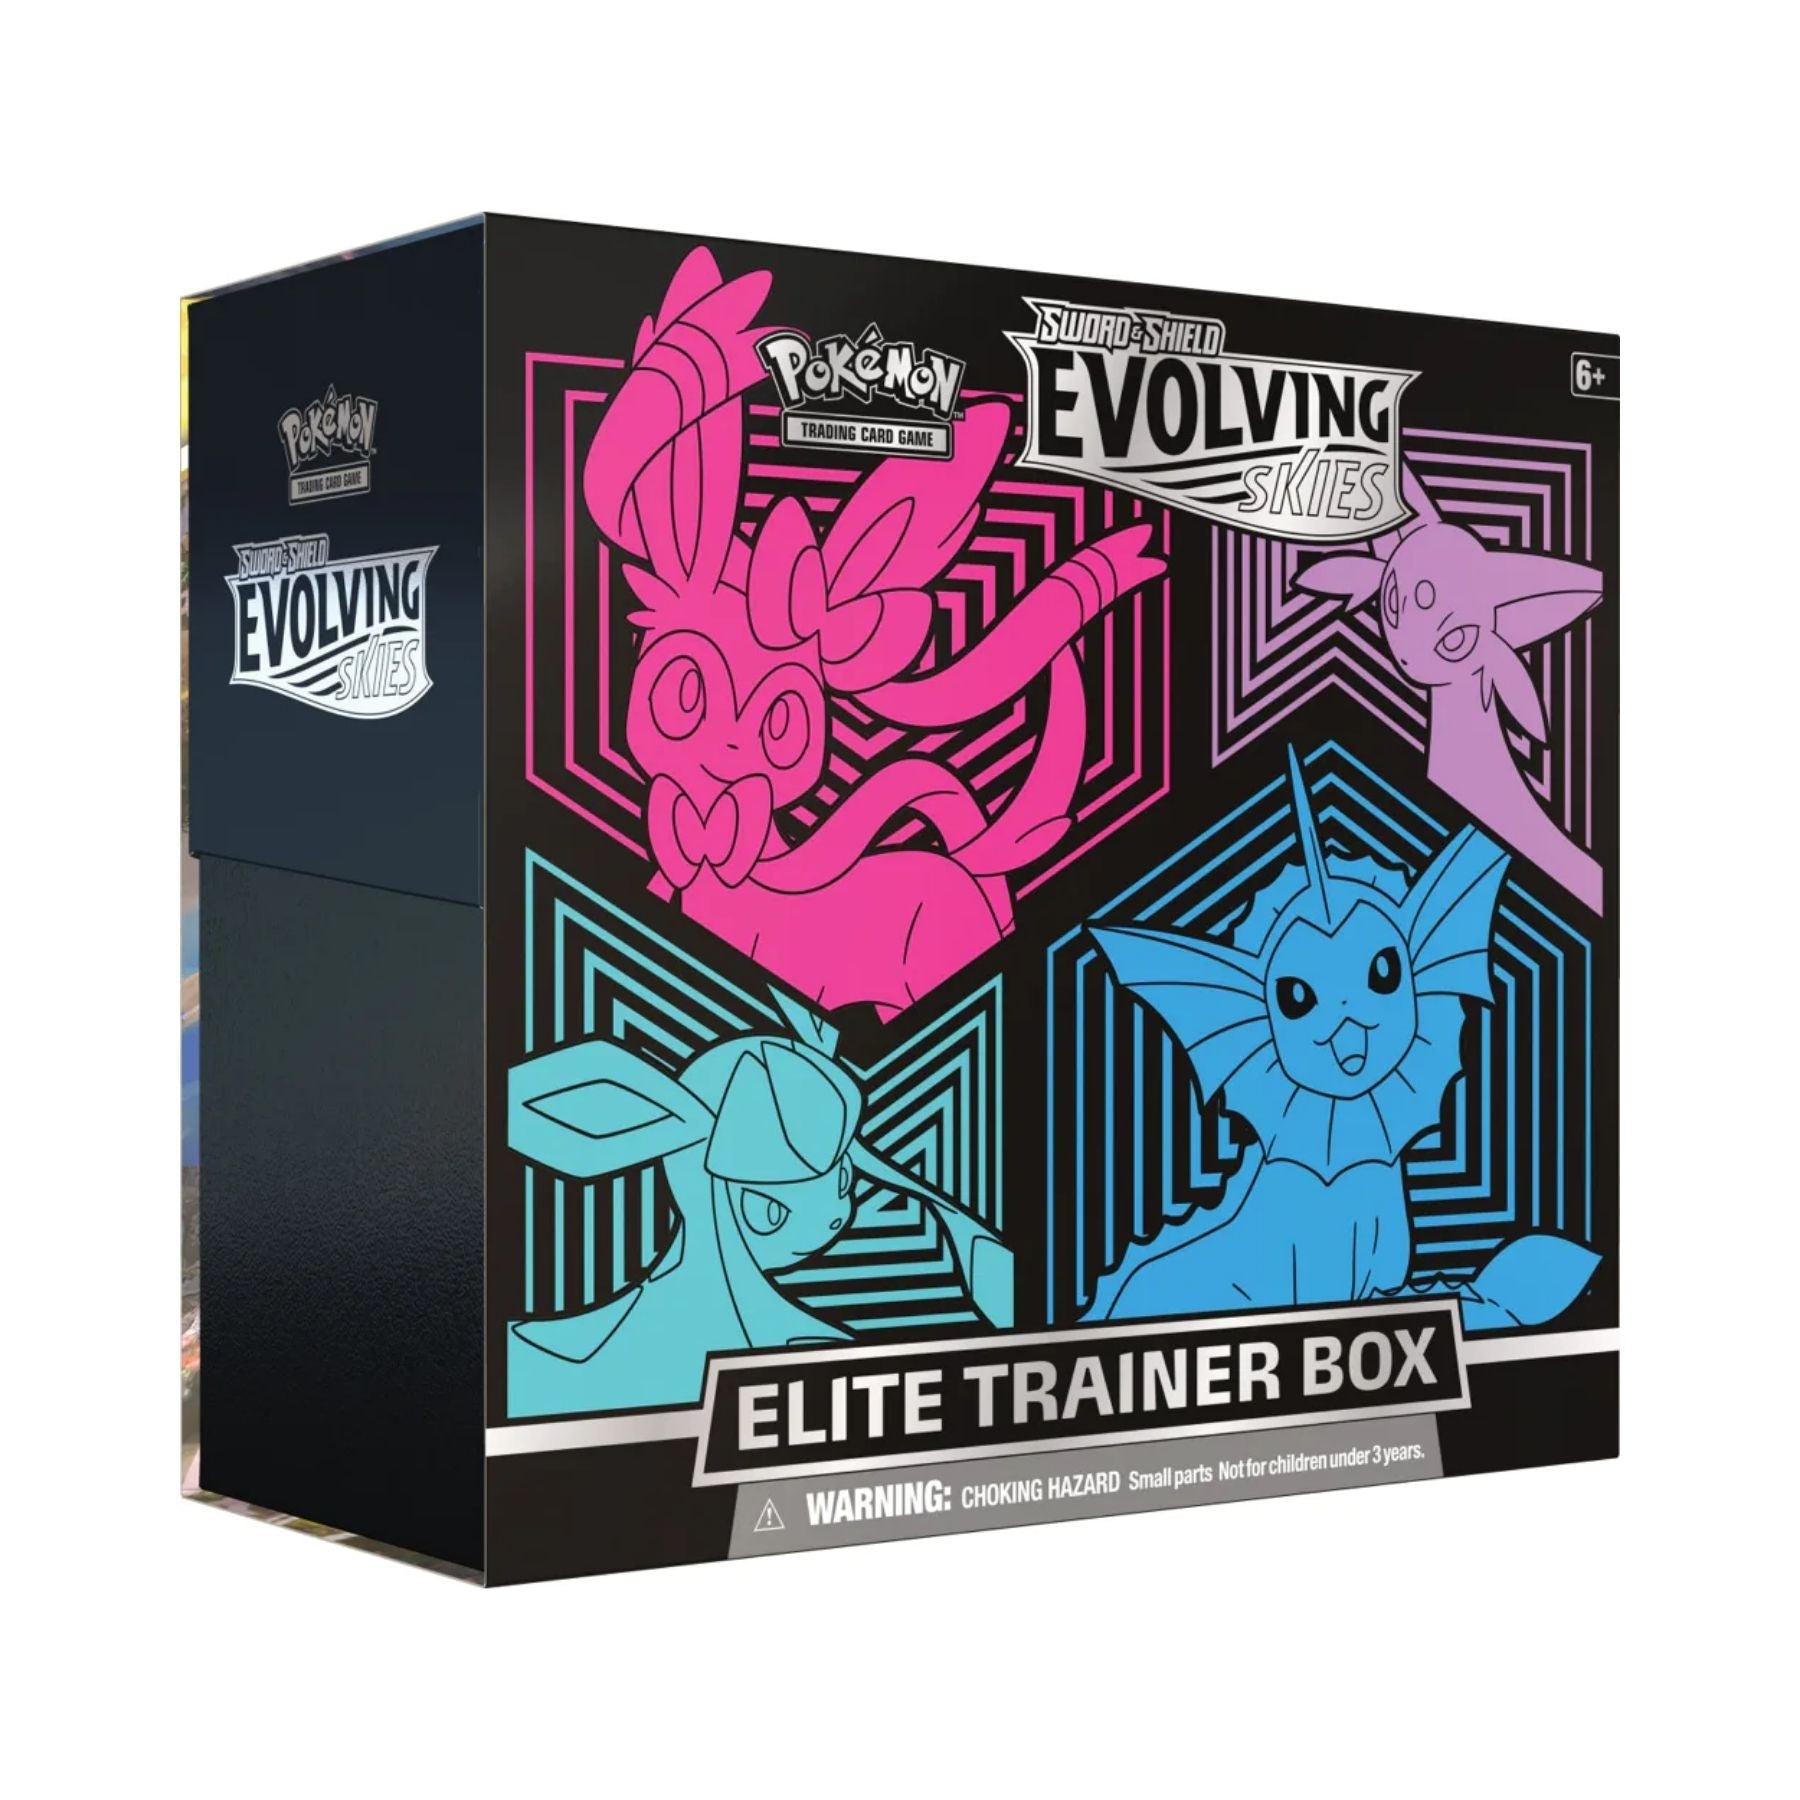 Pokemon Evolving Skies Elite Trainer Box Sylveon/Espeon/Glaceon/Vaporeon